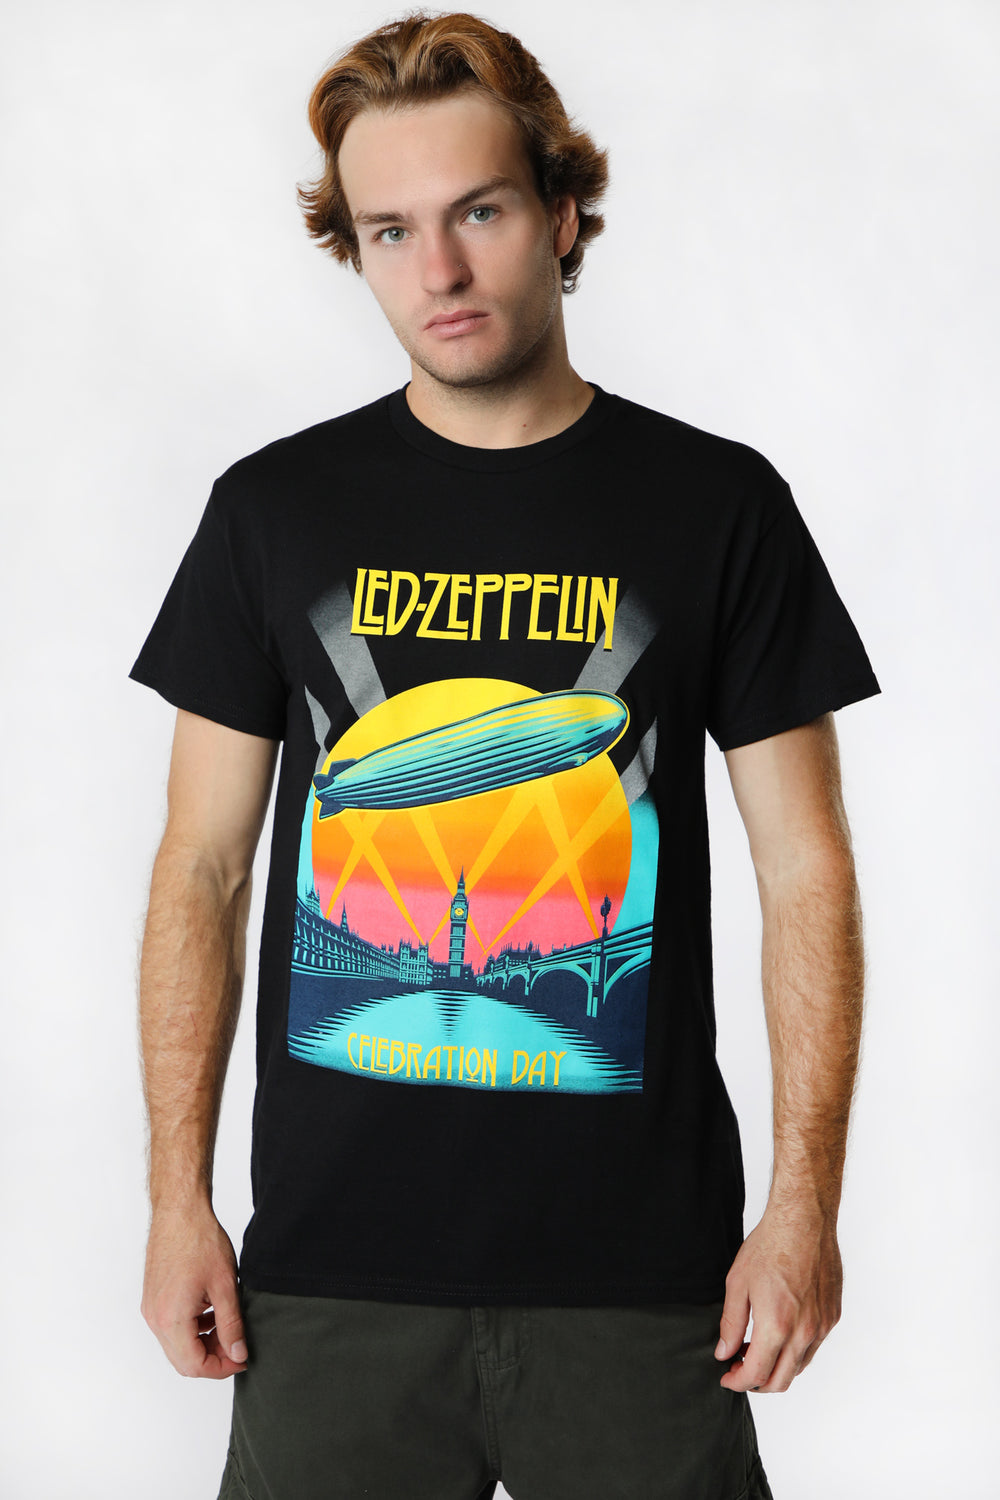 Mens Led Zeppelin T-Shirt Mens Led Zeppelin T-Shirt